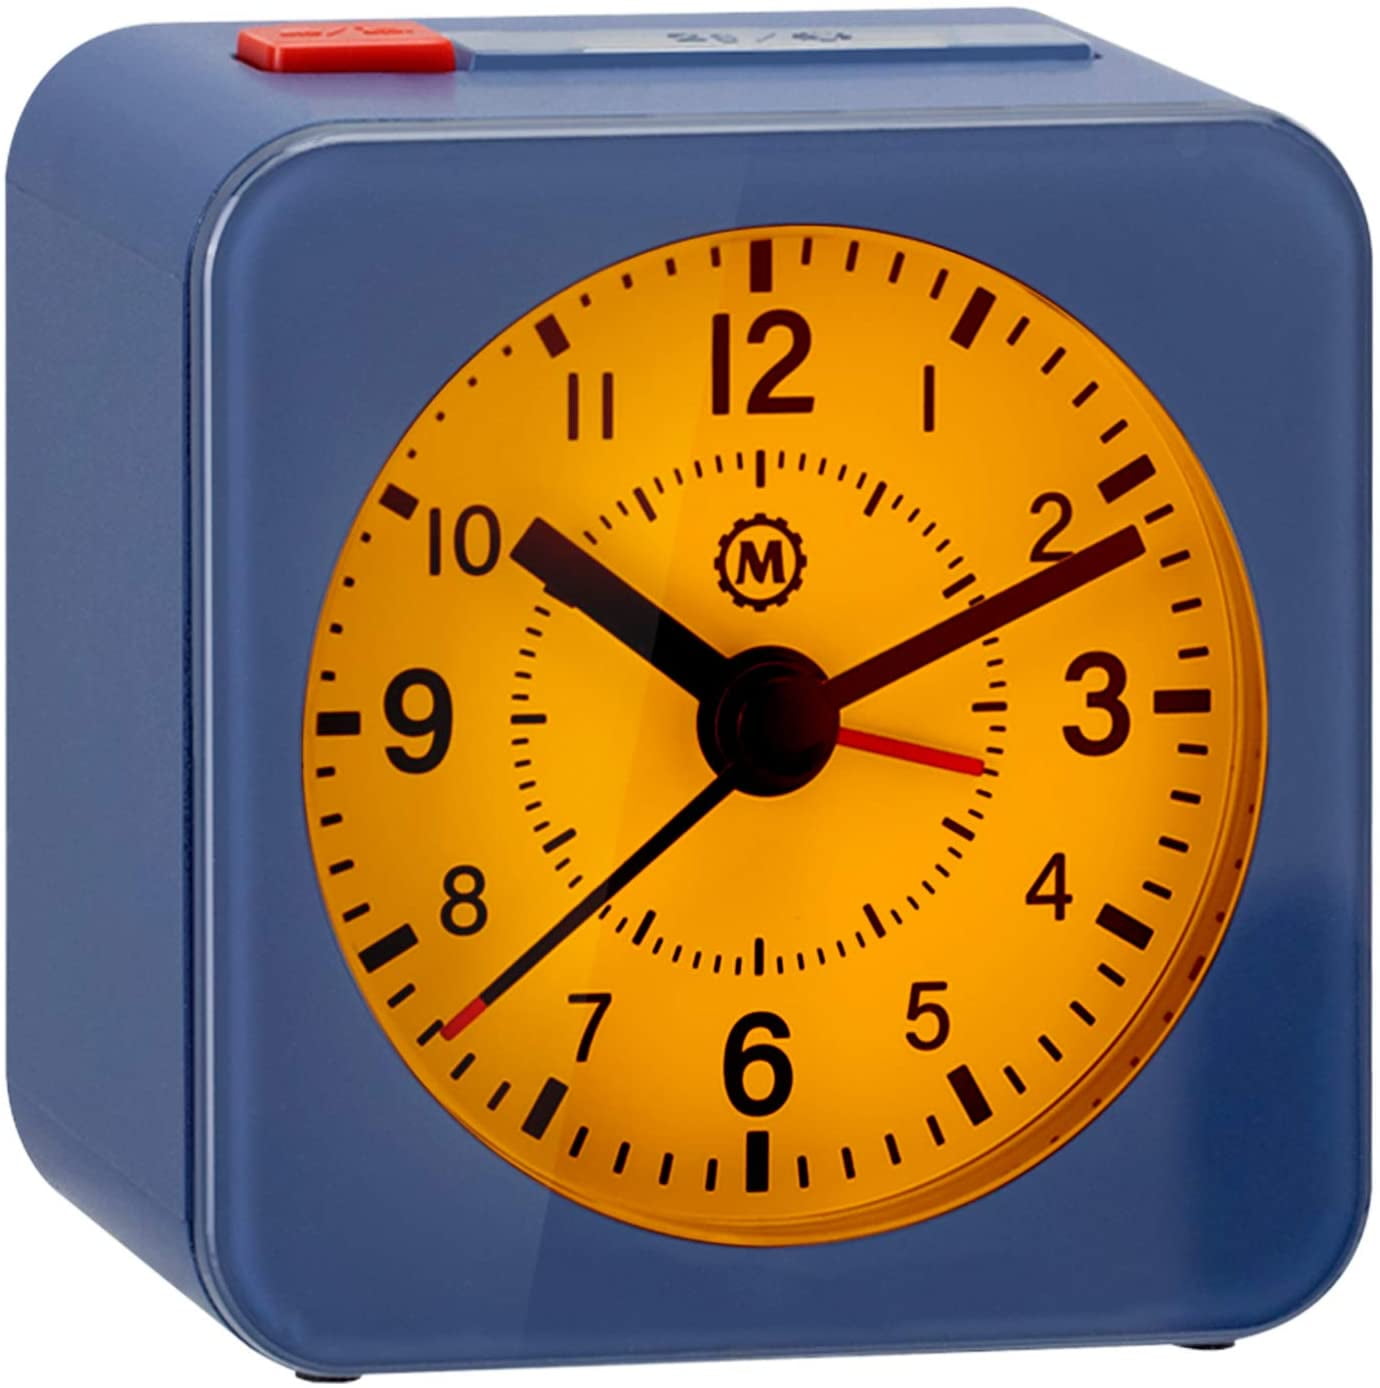 travel alarm clock no ticking sound